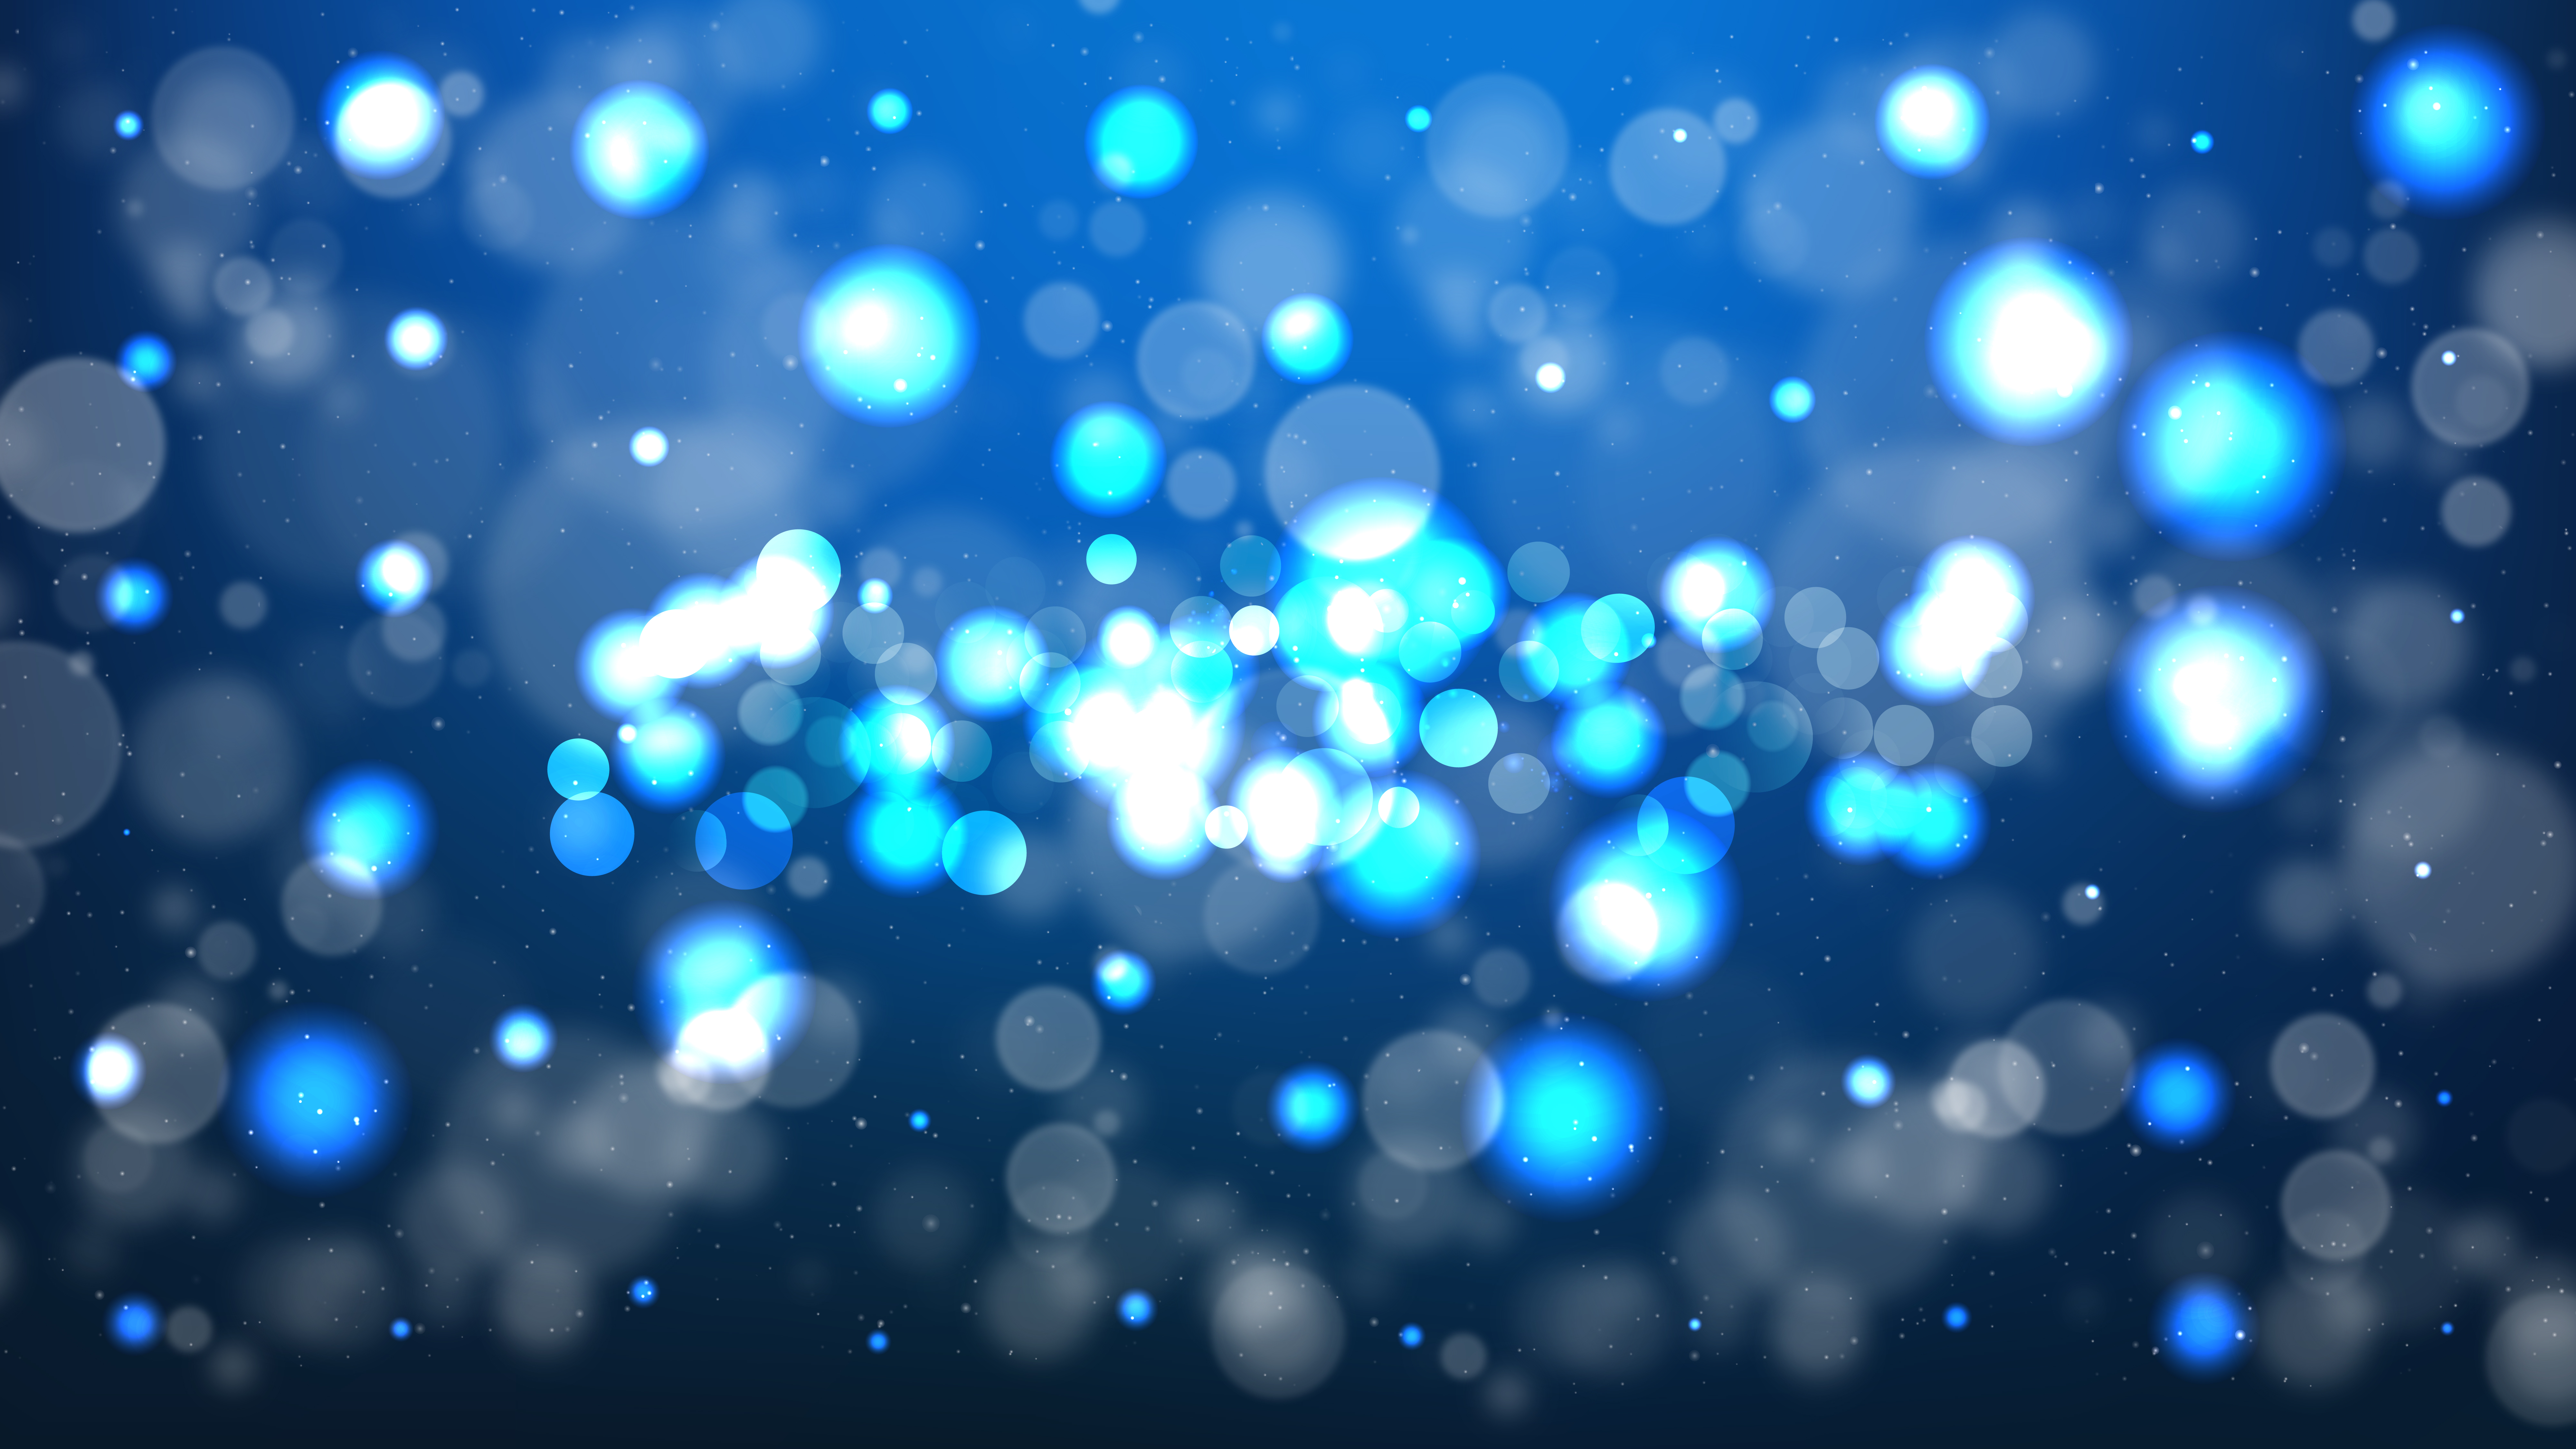 Black And Blue Blurred Lights Background Design